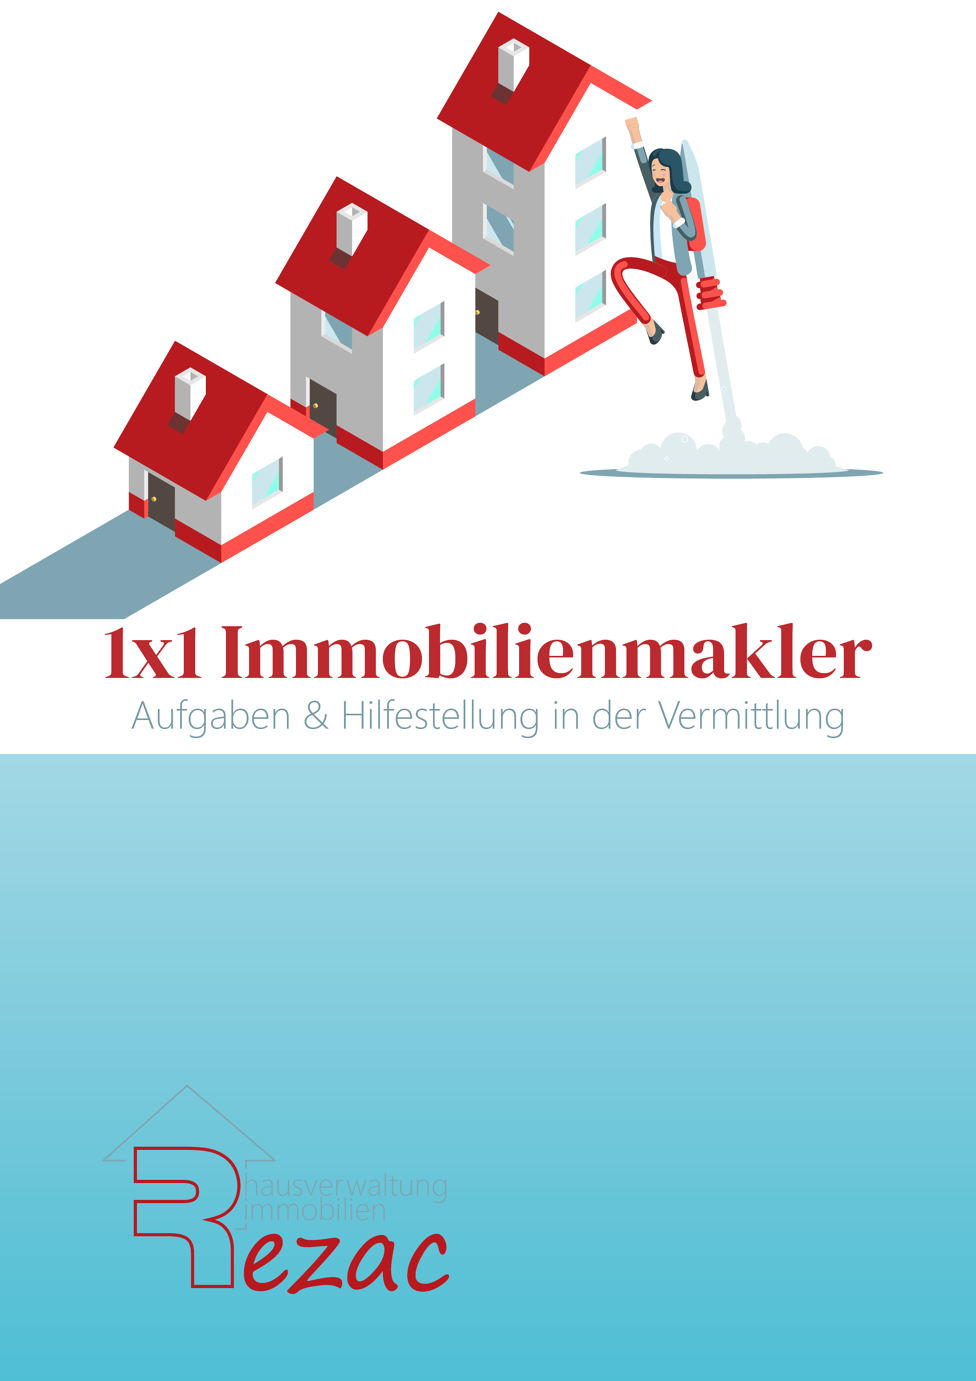 Coverbild des E-Books '1x1 Immobilienmakler - Aufgaben & Hilfestellung in der Vermittlung' von Rezac